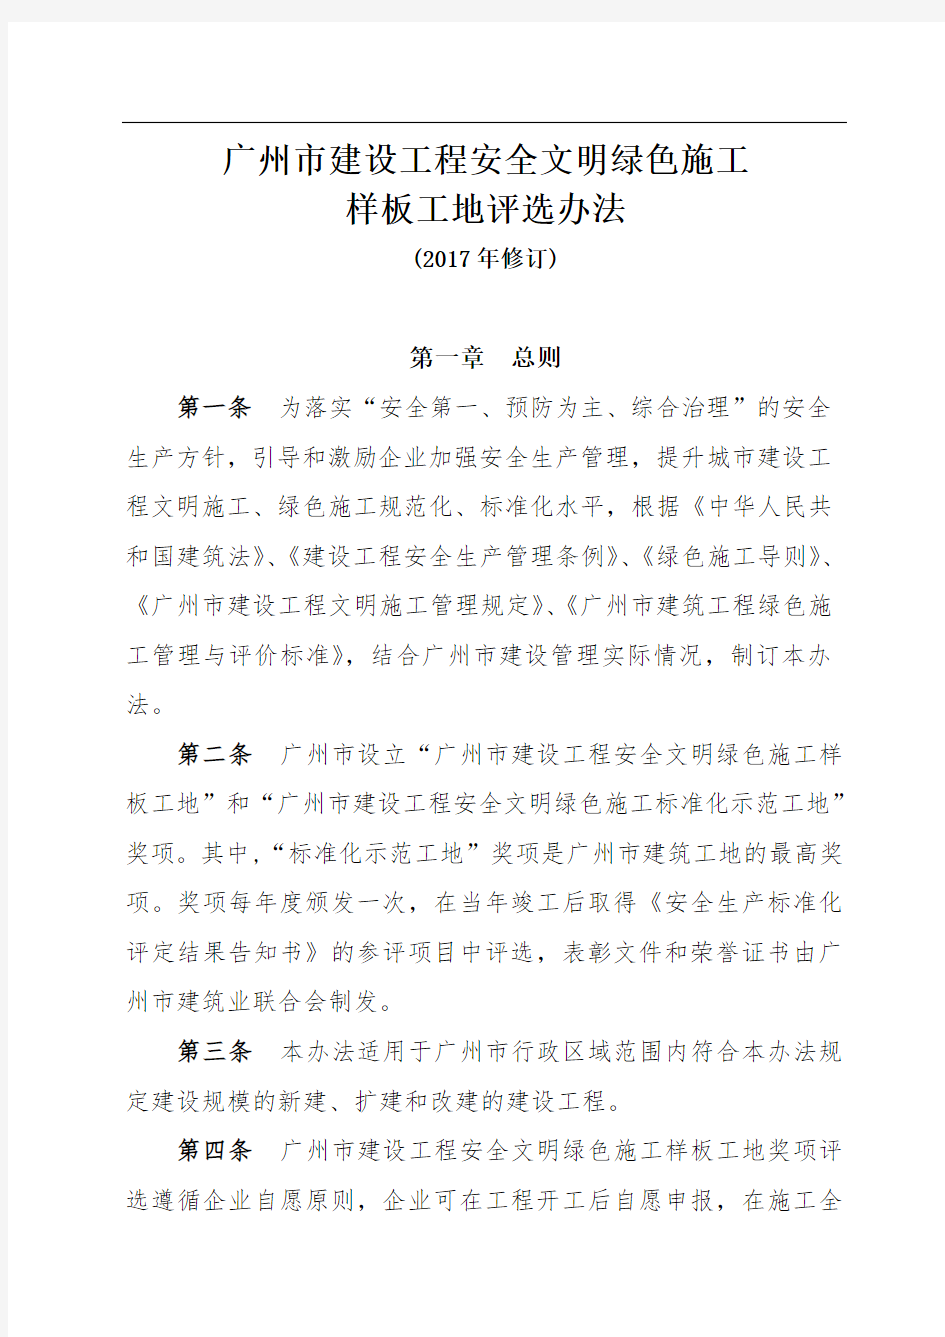 广州市建设工程安全文明绿色施工样板工地评选办法(修订)